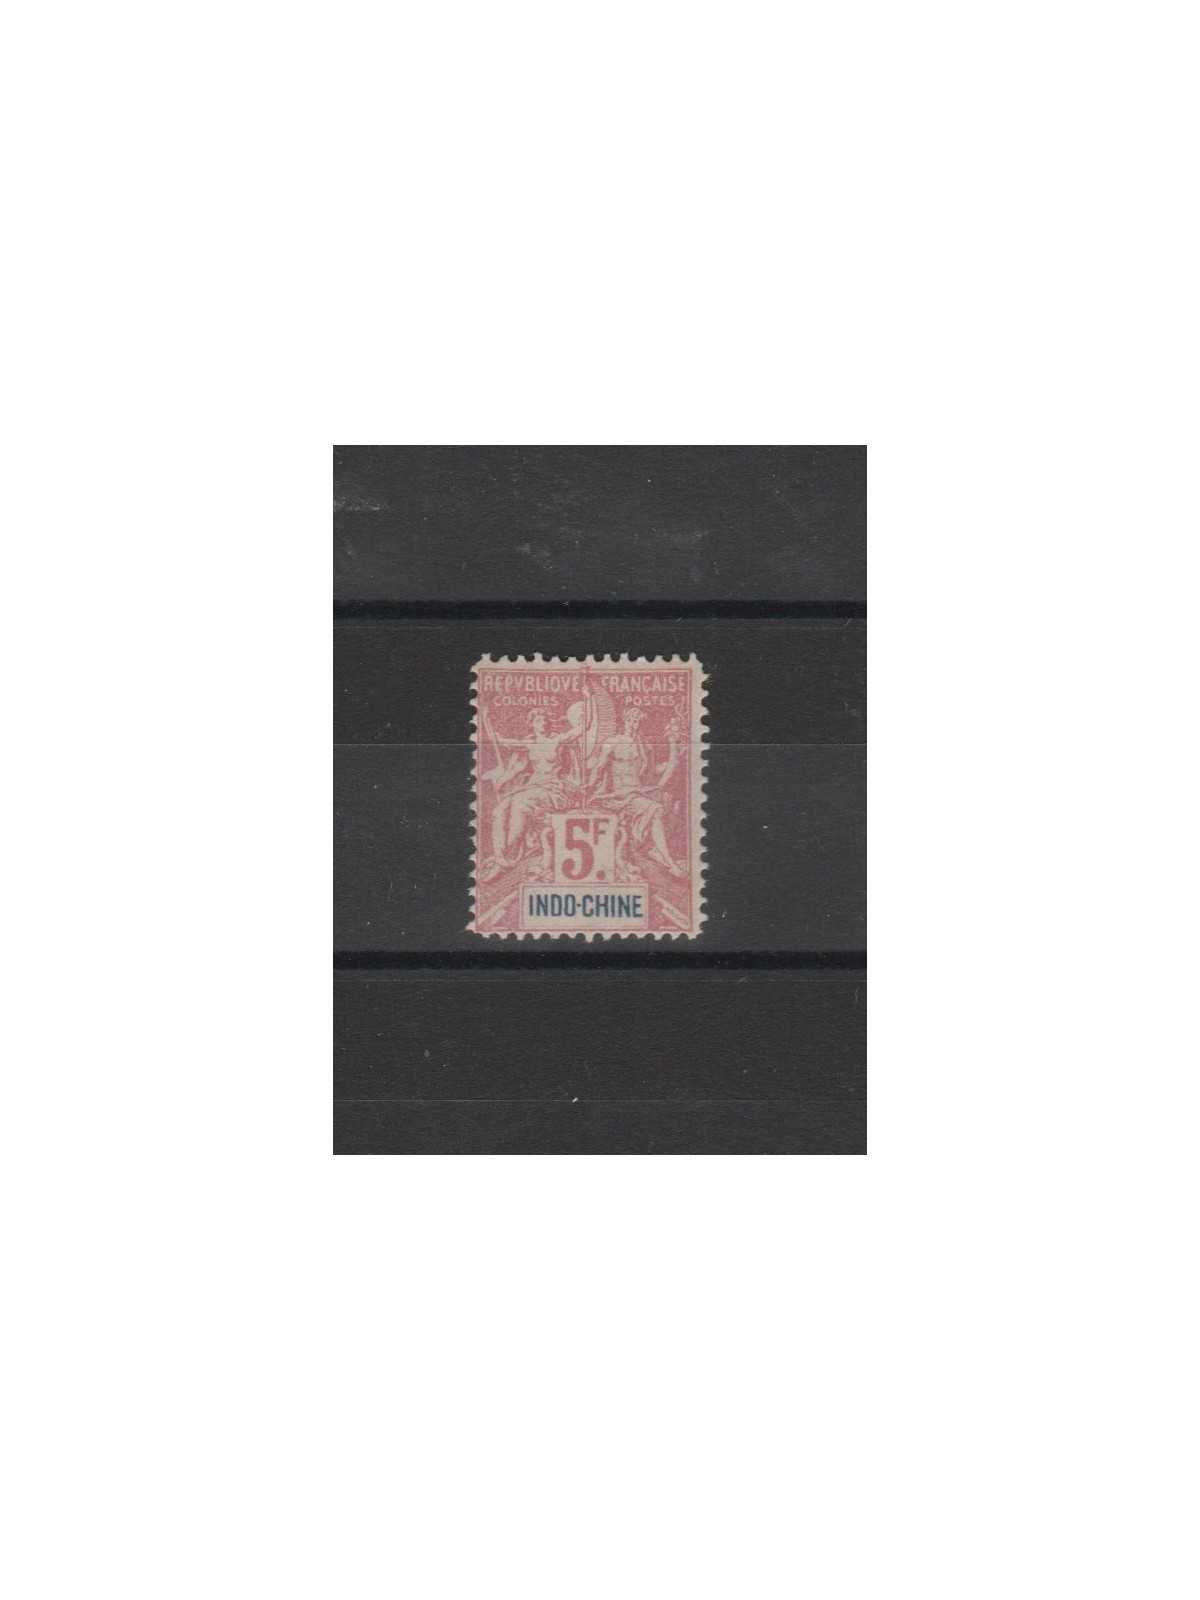 INDOCHINE - INDOCINA 1892-96 ALLEGORIE 1 V MLH MF19559